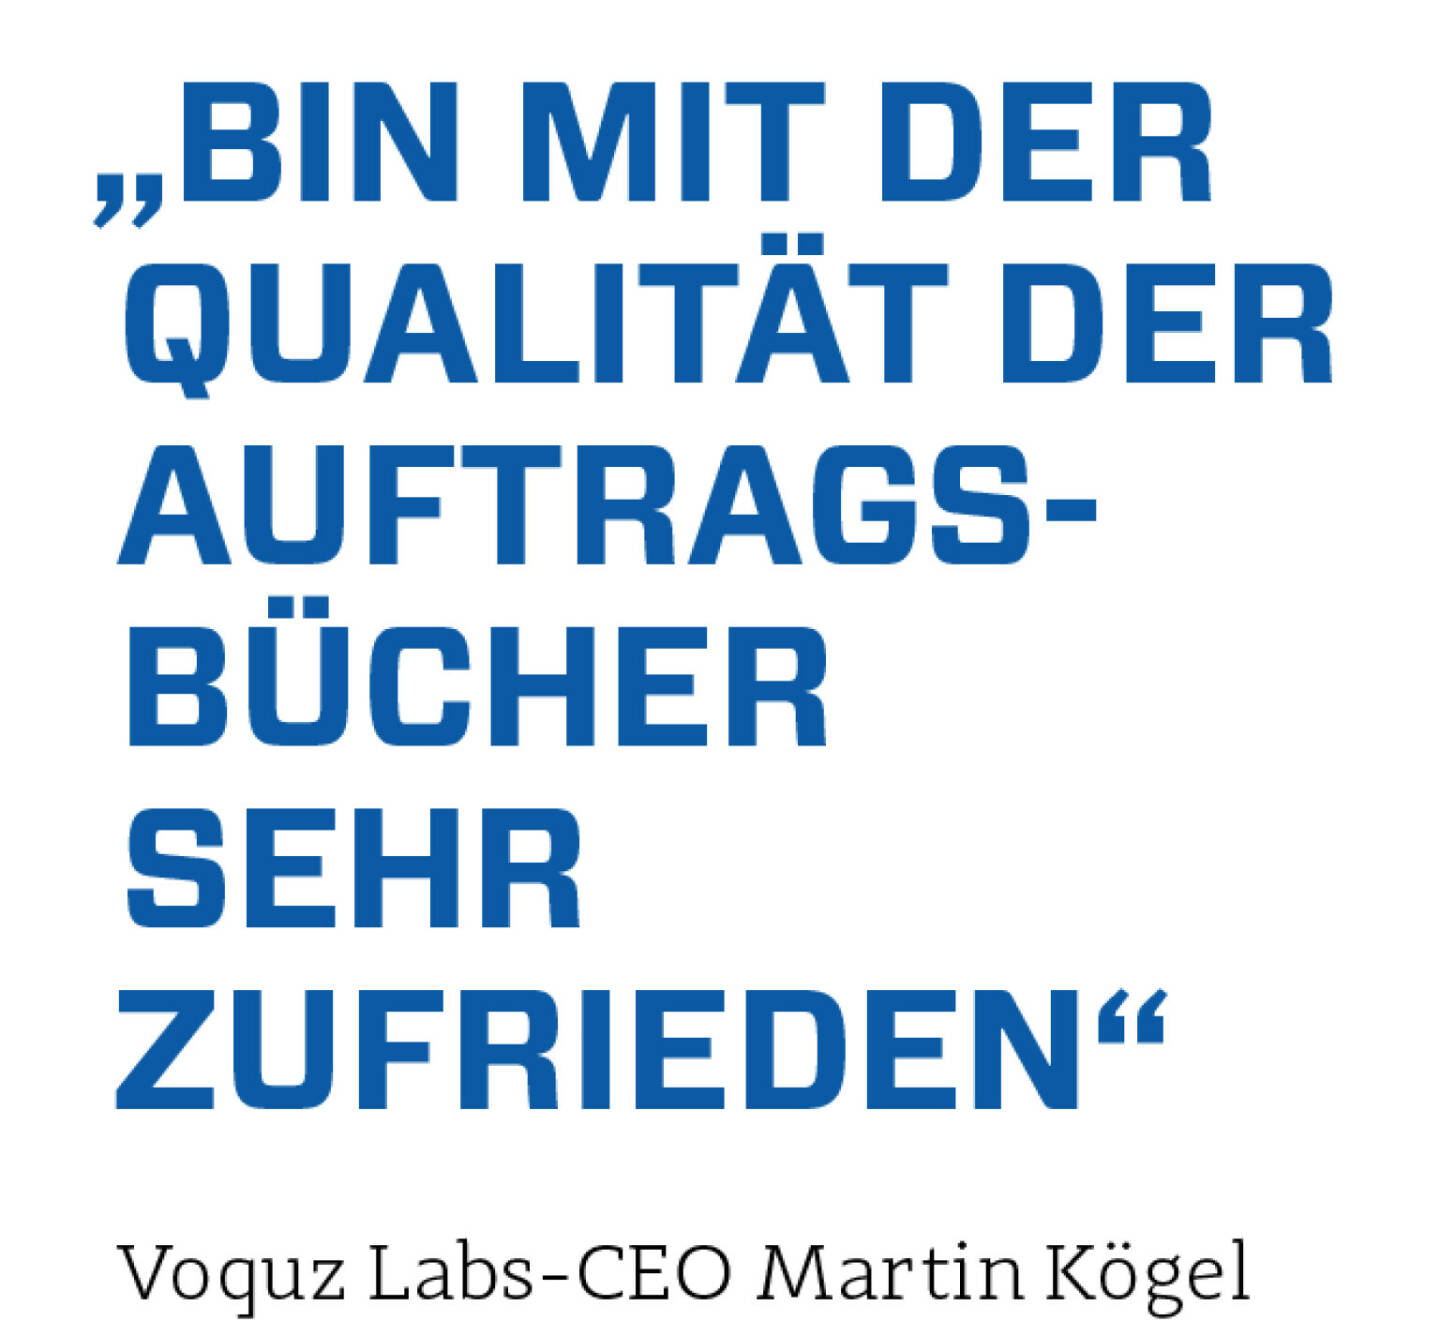 „Bin mit der Qualität der Auftragsbücher sehr zufrieden“
Voquz Labs-CEO Martin Kögel 